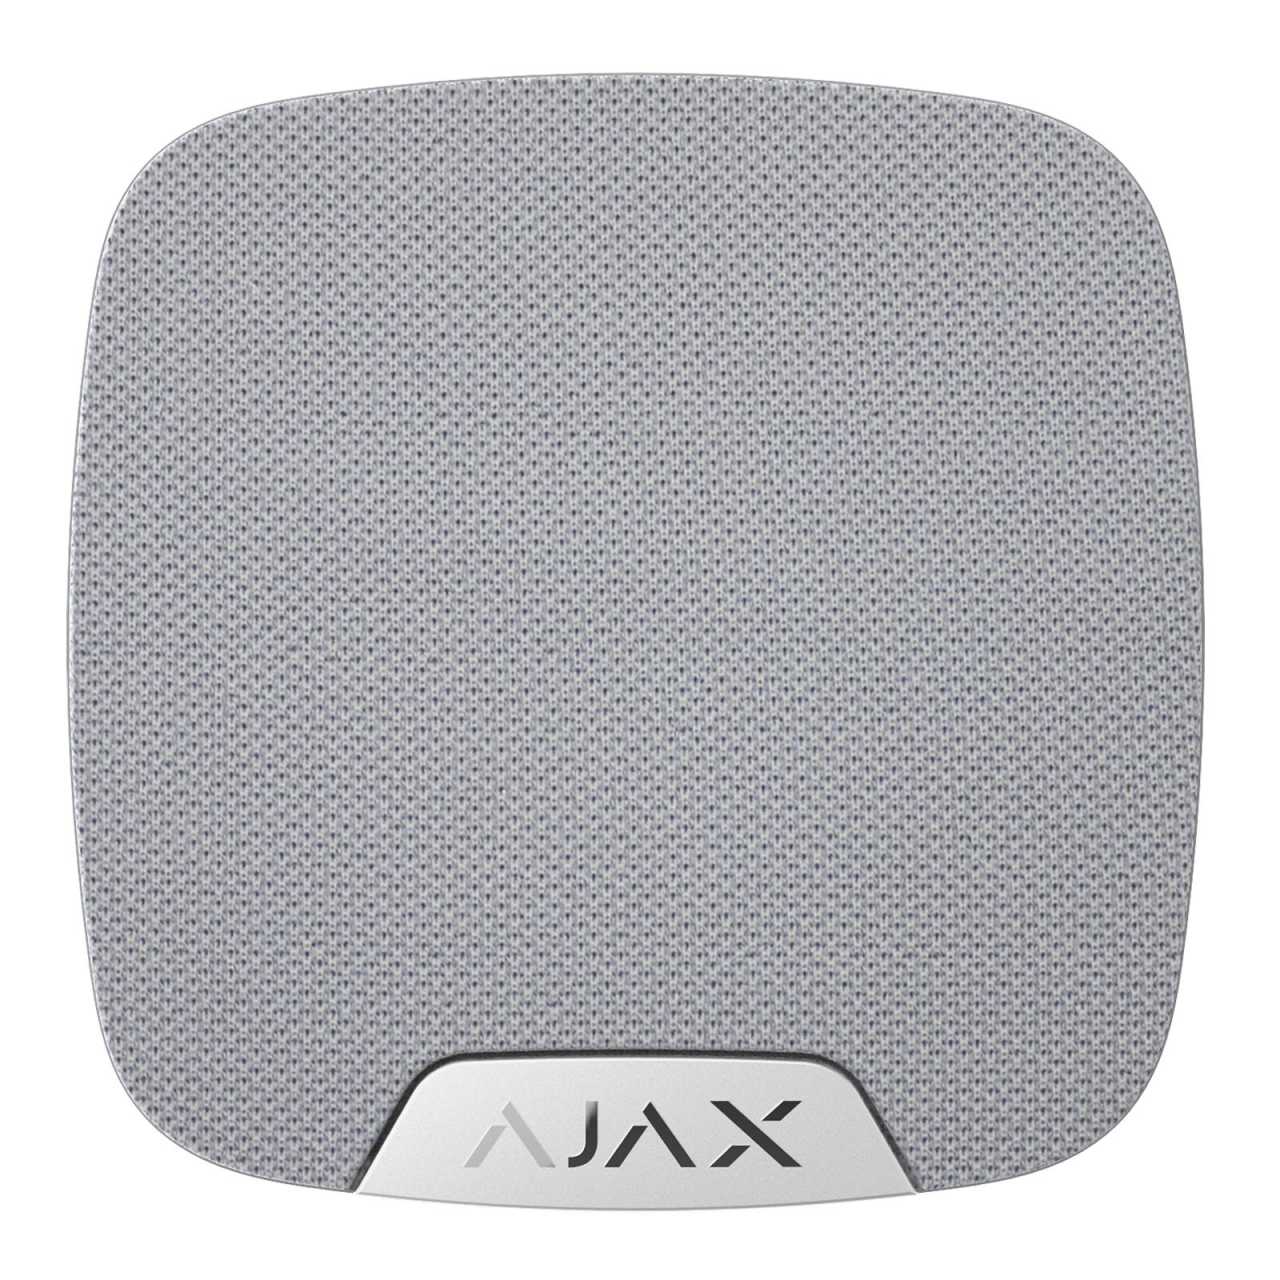 AJAX Funk Innensirene drahtlose Sirene mit bis zu 105 dB HomeSiren Weiss von Ajax Systems